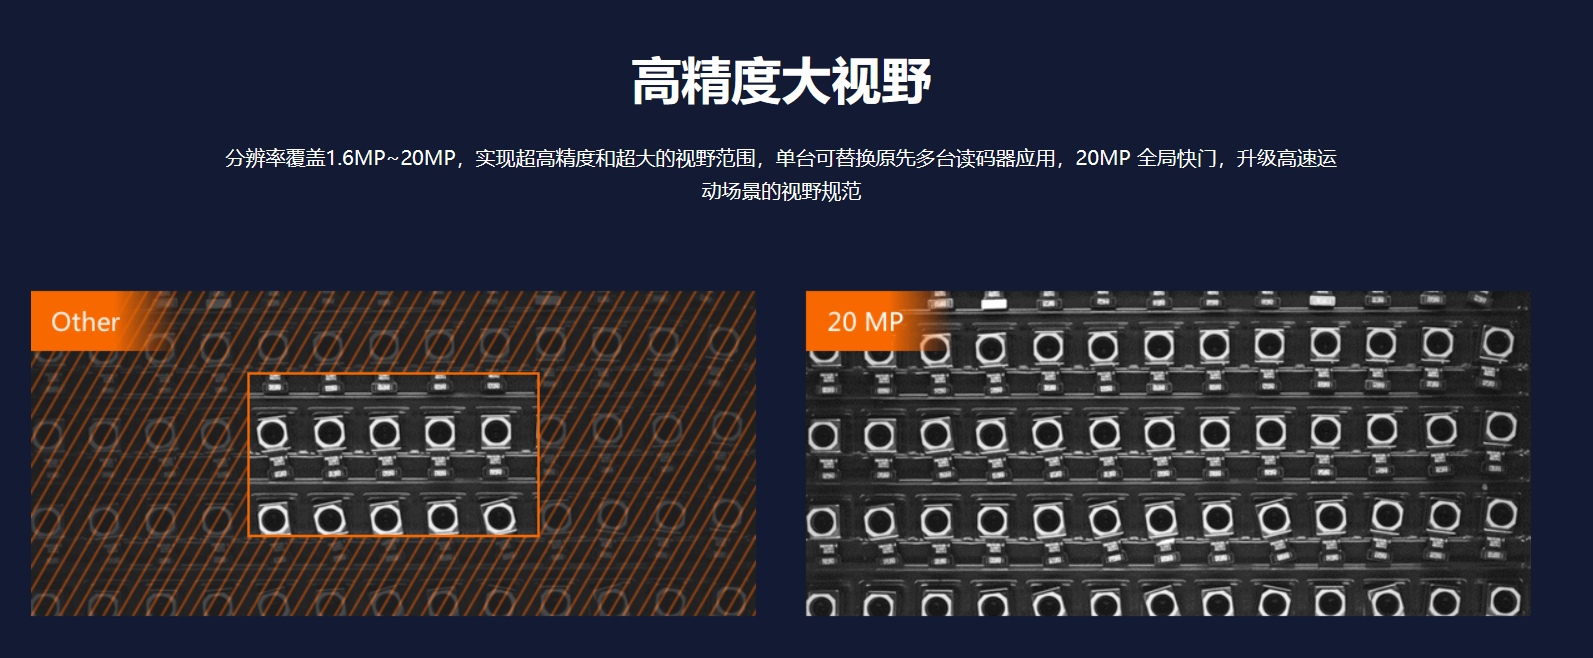 智能读码丨海康ID5000系列 MV-ID5120M-00C-NNN 1200万像素全功能型工业读码器-捷利得(北京)自动化科技有限公司